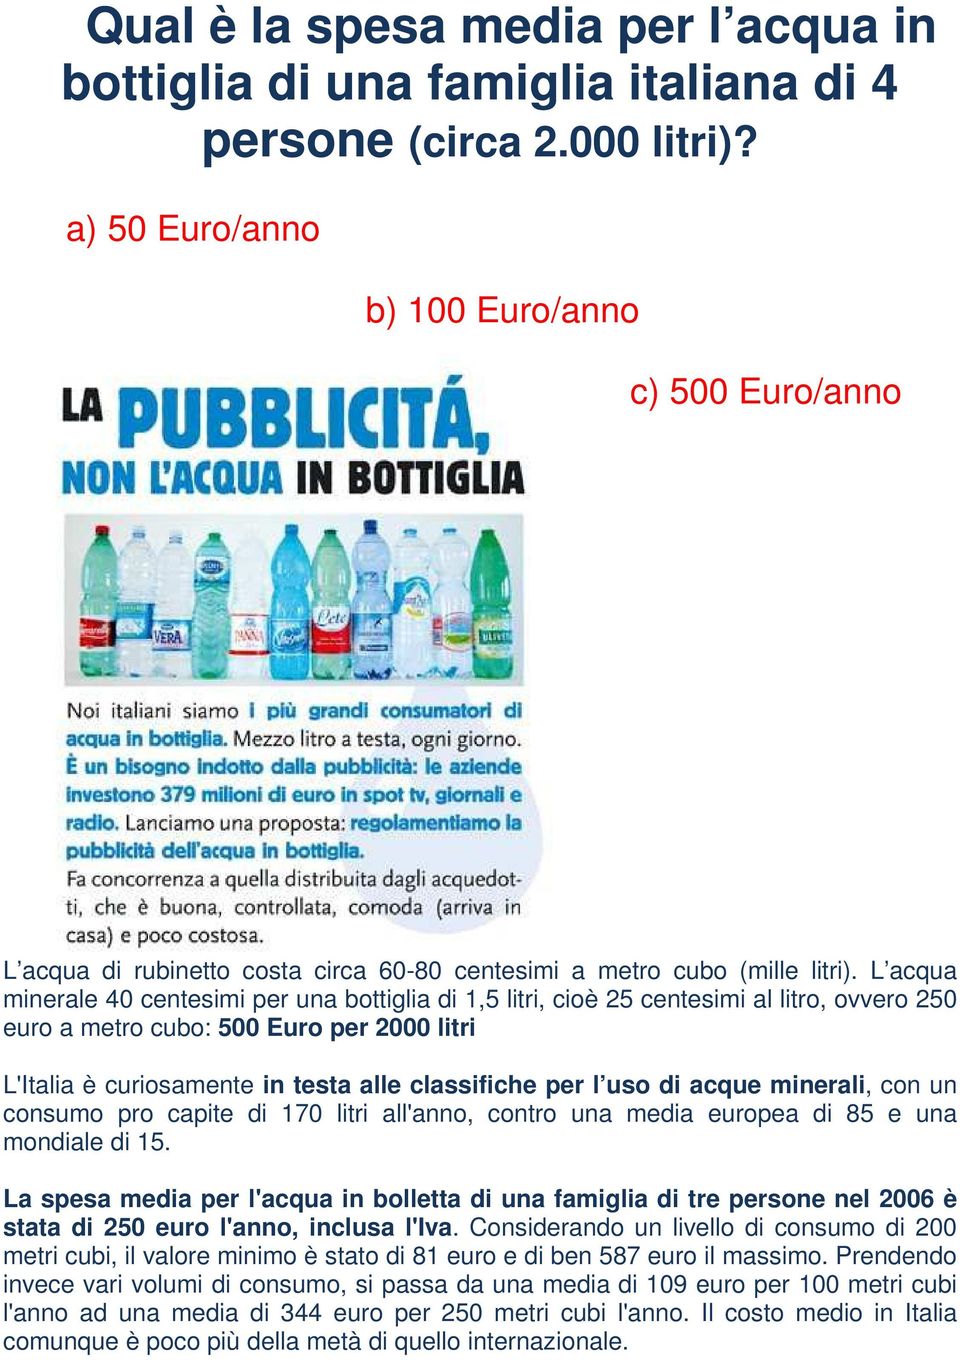 L acqua minerale 40 centesimi per una bottiglia di 1,5 litri, cioè 25 centesimi al litro, ovvero 250 euro a metro cubo: 500 Euro per 2000 litri L'Italia è curiosamente in testa alle classifiche per l